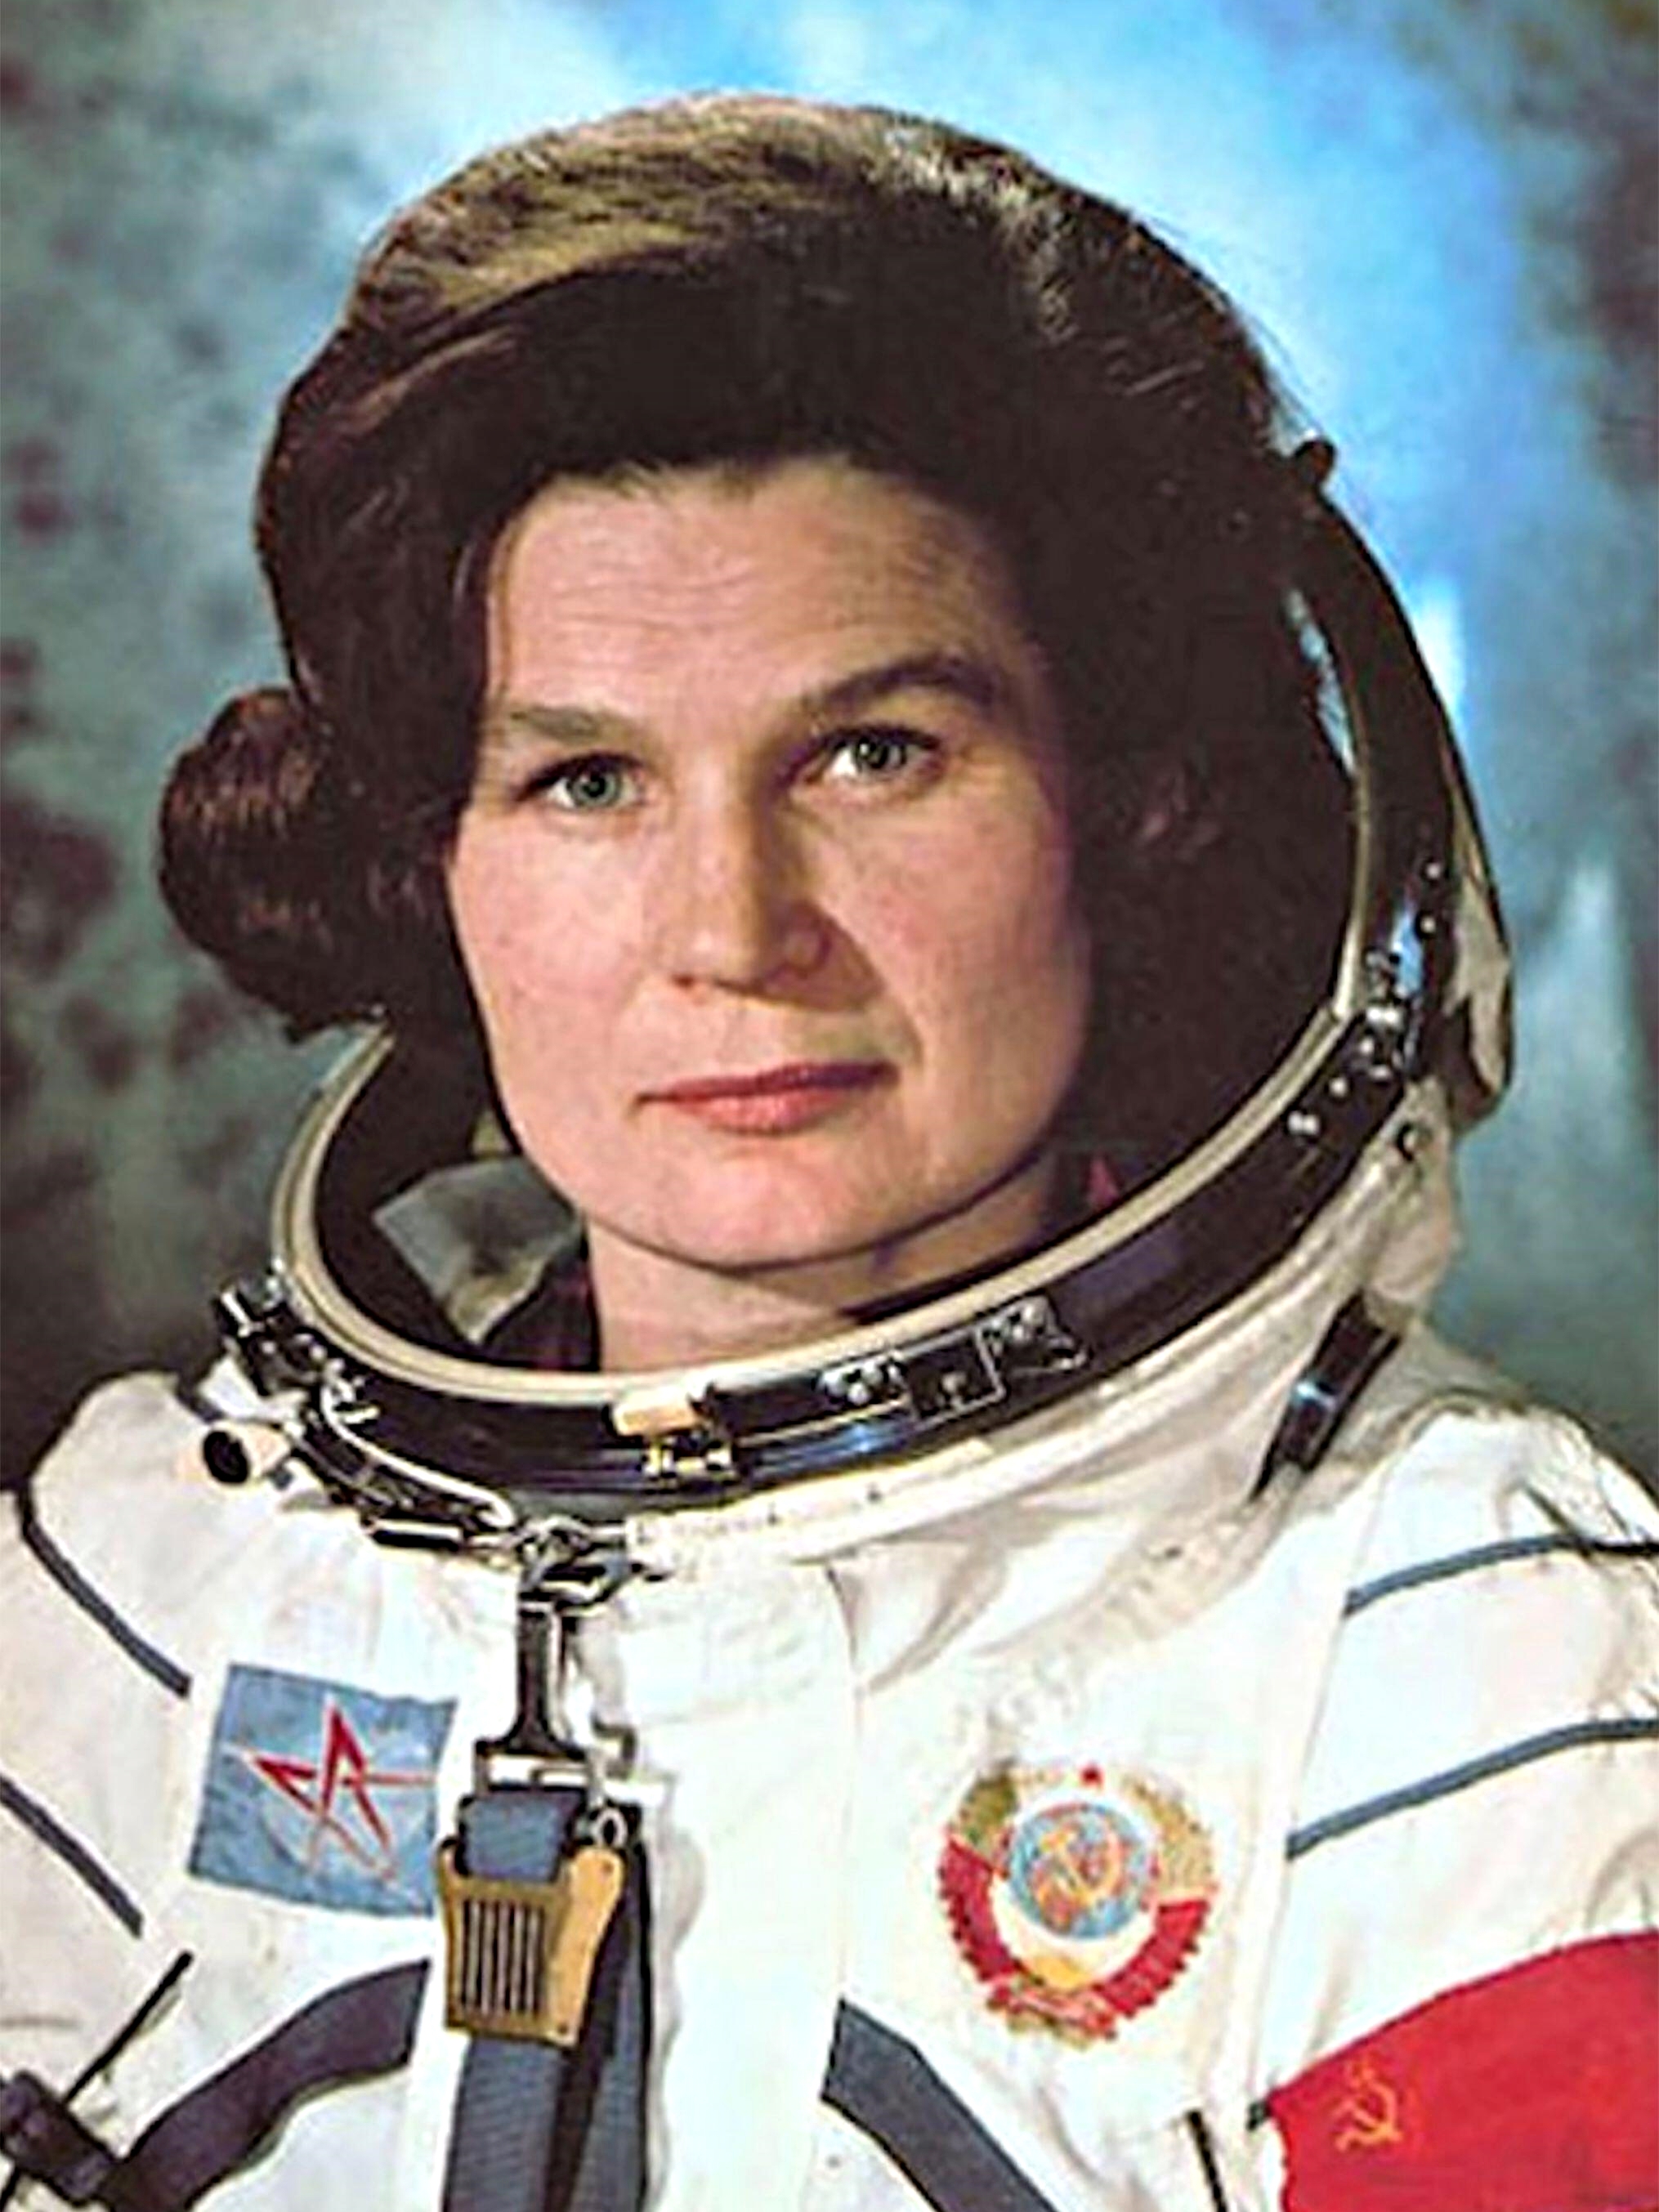 Как звали 1 женщину космонавта